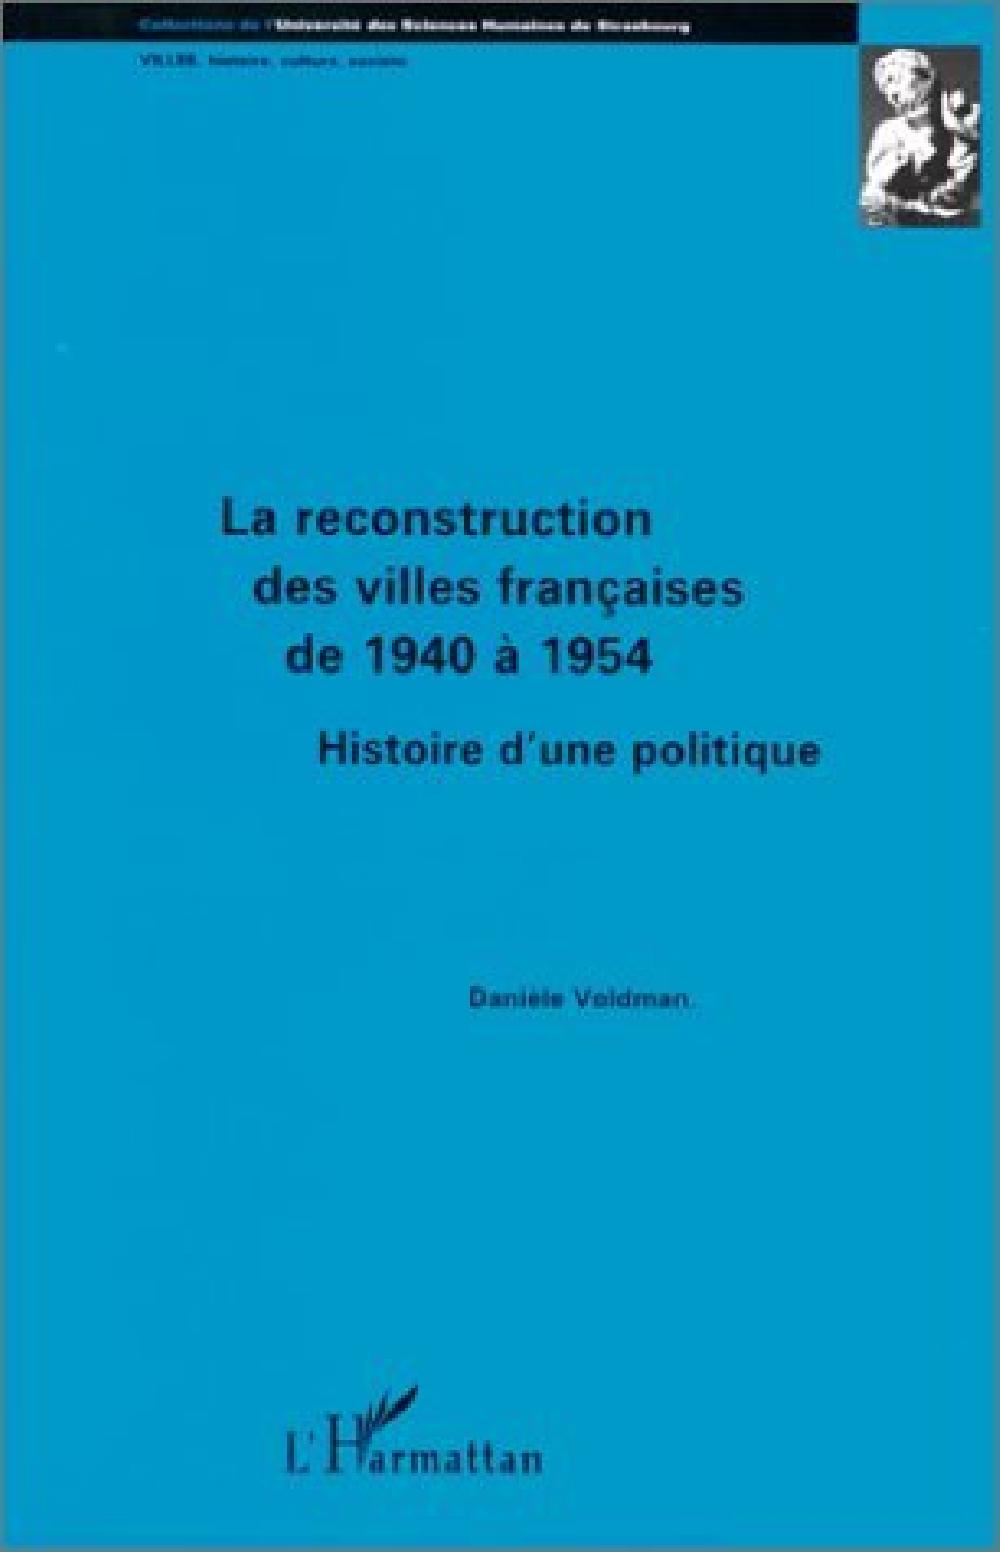 La reconstruction des villes françaises de 1940 à 1954 - Histoire d'une politique